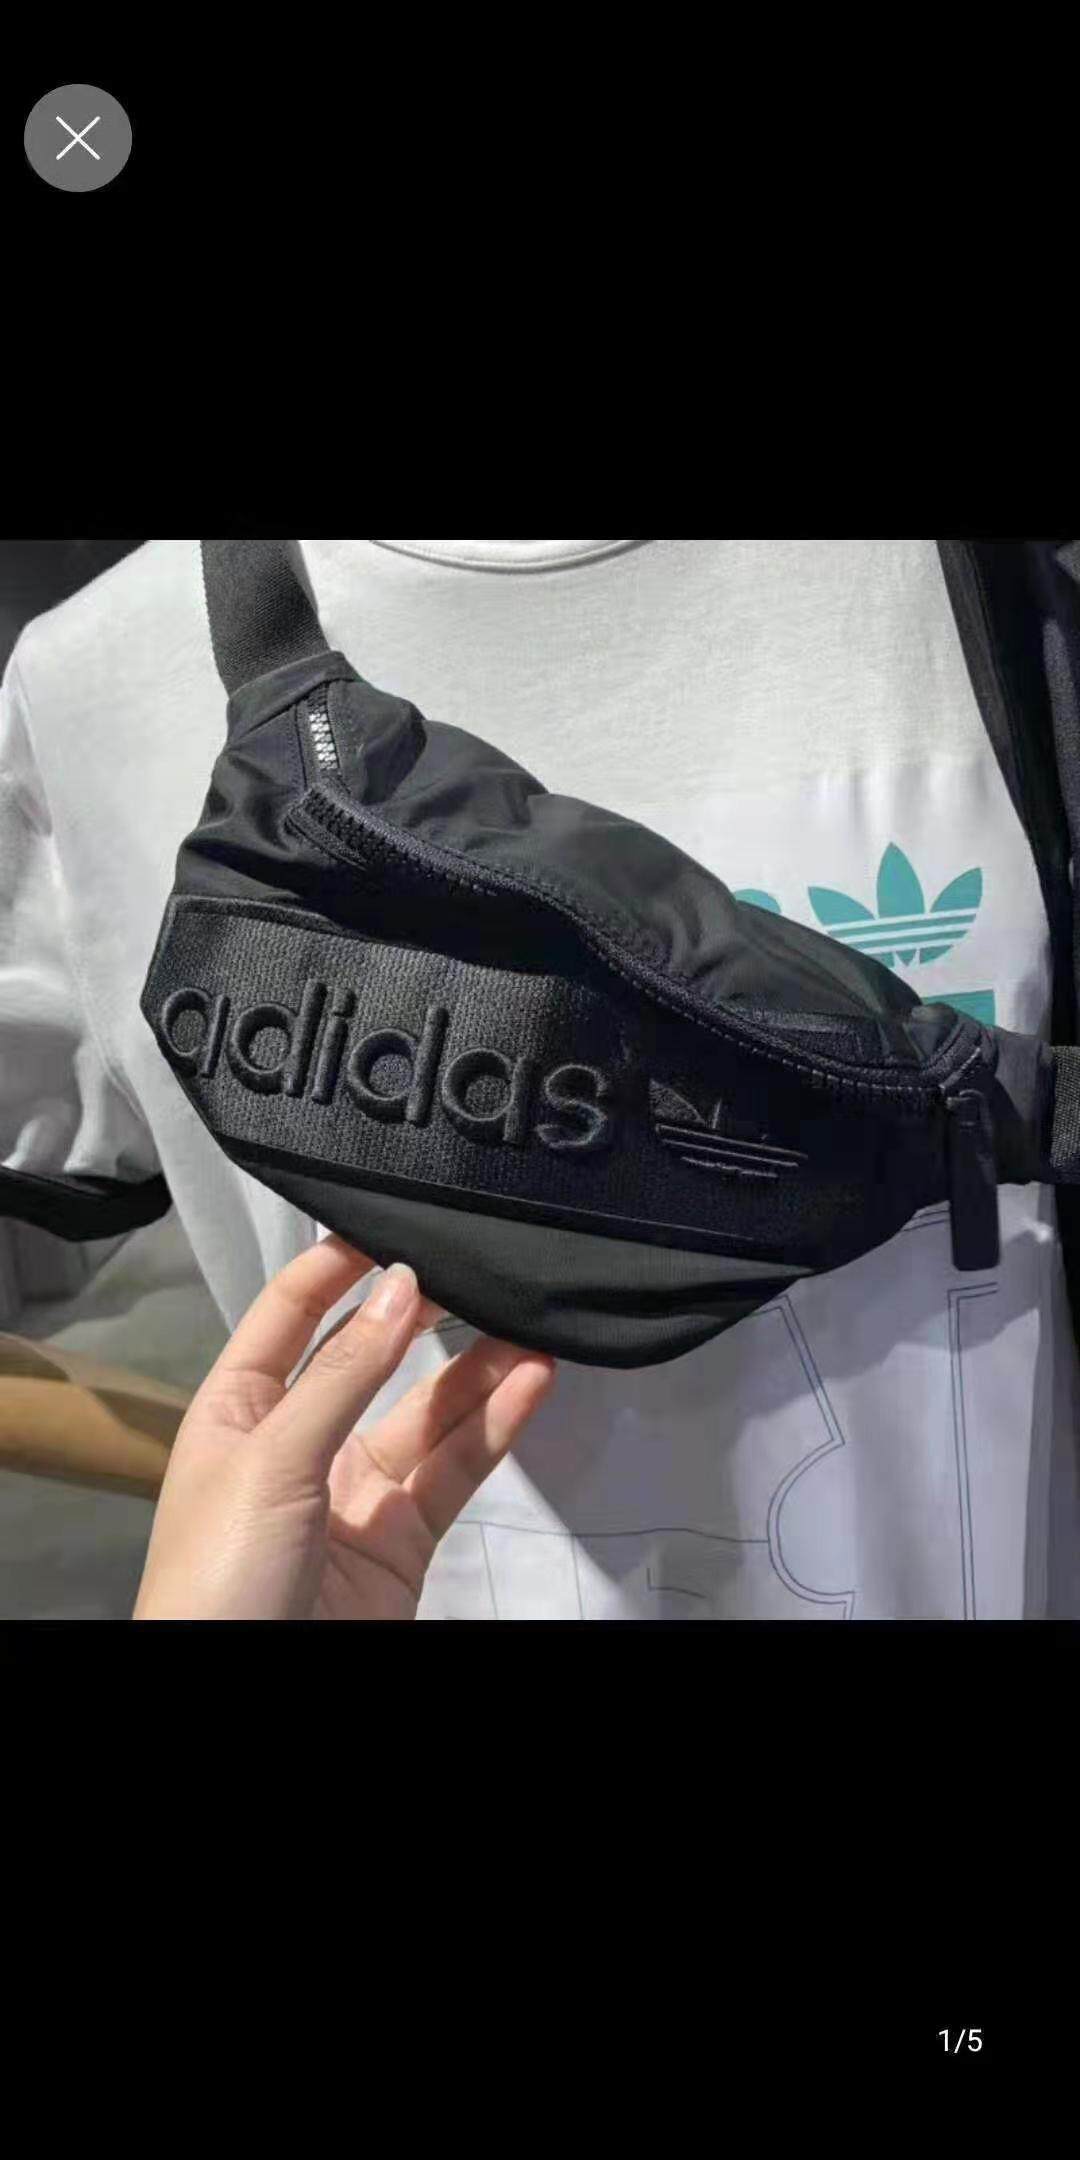 กระเป๋าถือ นักเรียน ผู้หญิง วัยรุ่น กาฬสินธุ์ Adidas Men s Fashion versatile pockets Adidas กระเป๋าแฟชั่น